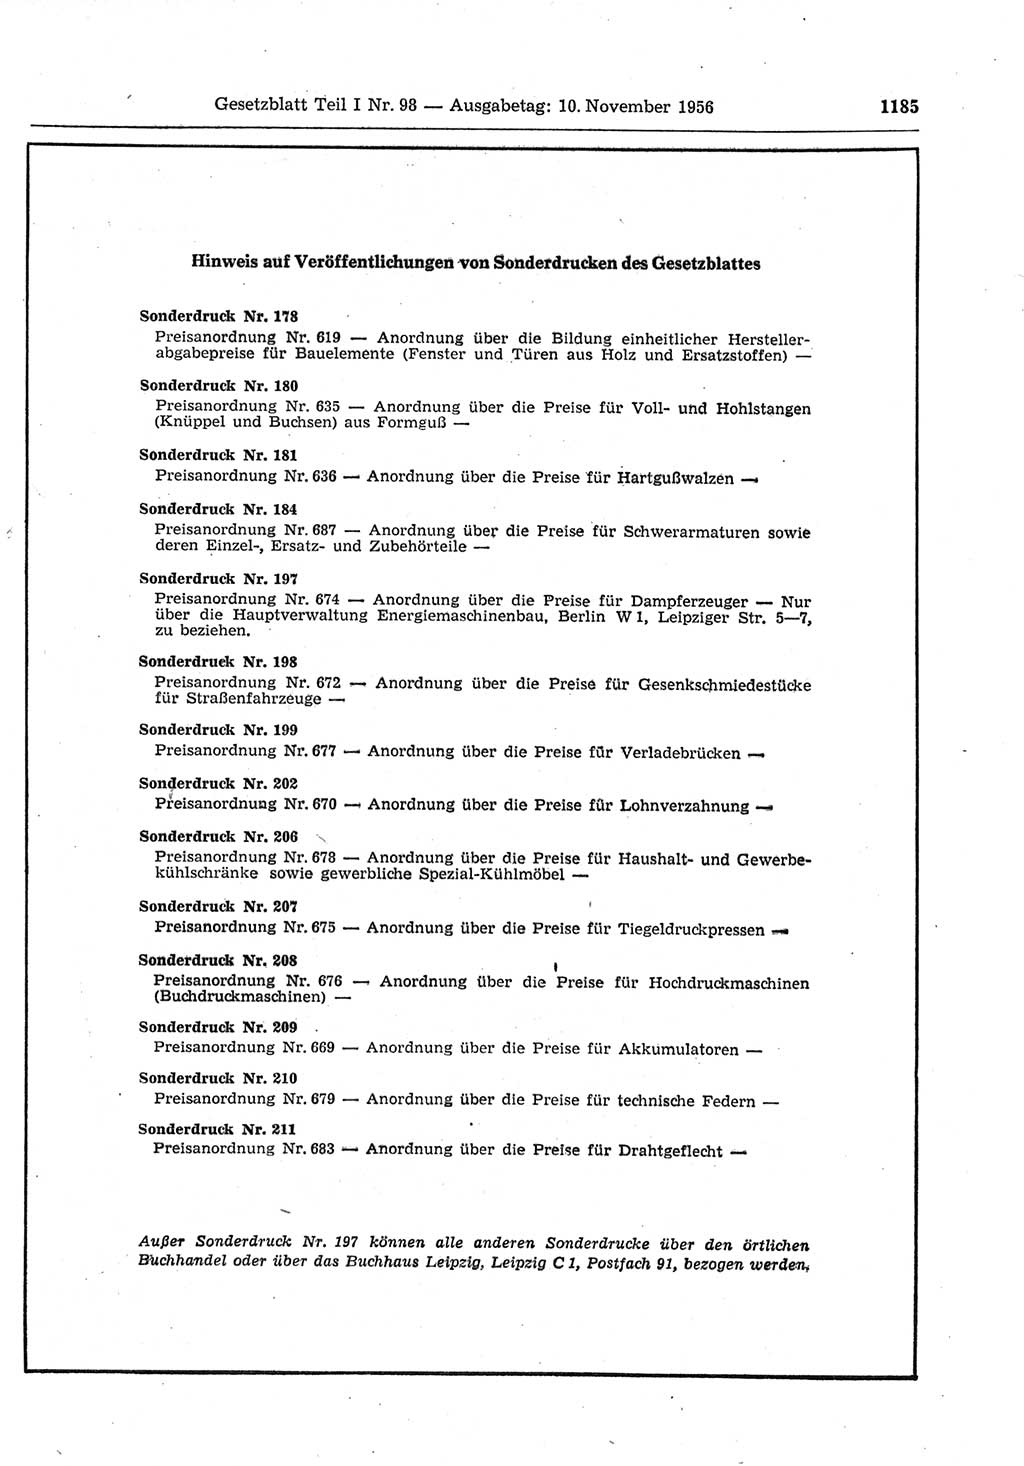 Gesetzblatt (GBl.) der Deutschen Demokratischen Republik (DDR) Teil Ⅰ 1956, Seite 1185 (GBl. DDR Ⅰ 1956, S. 1185)